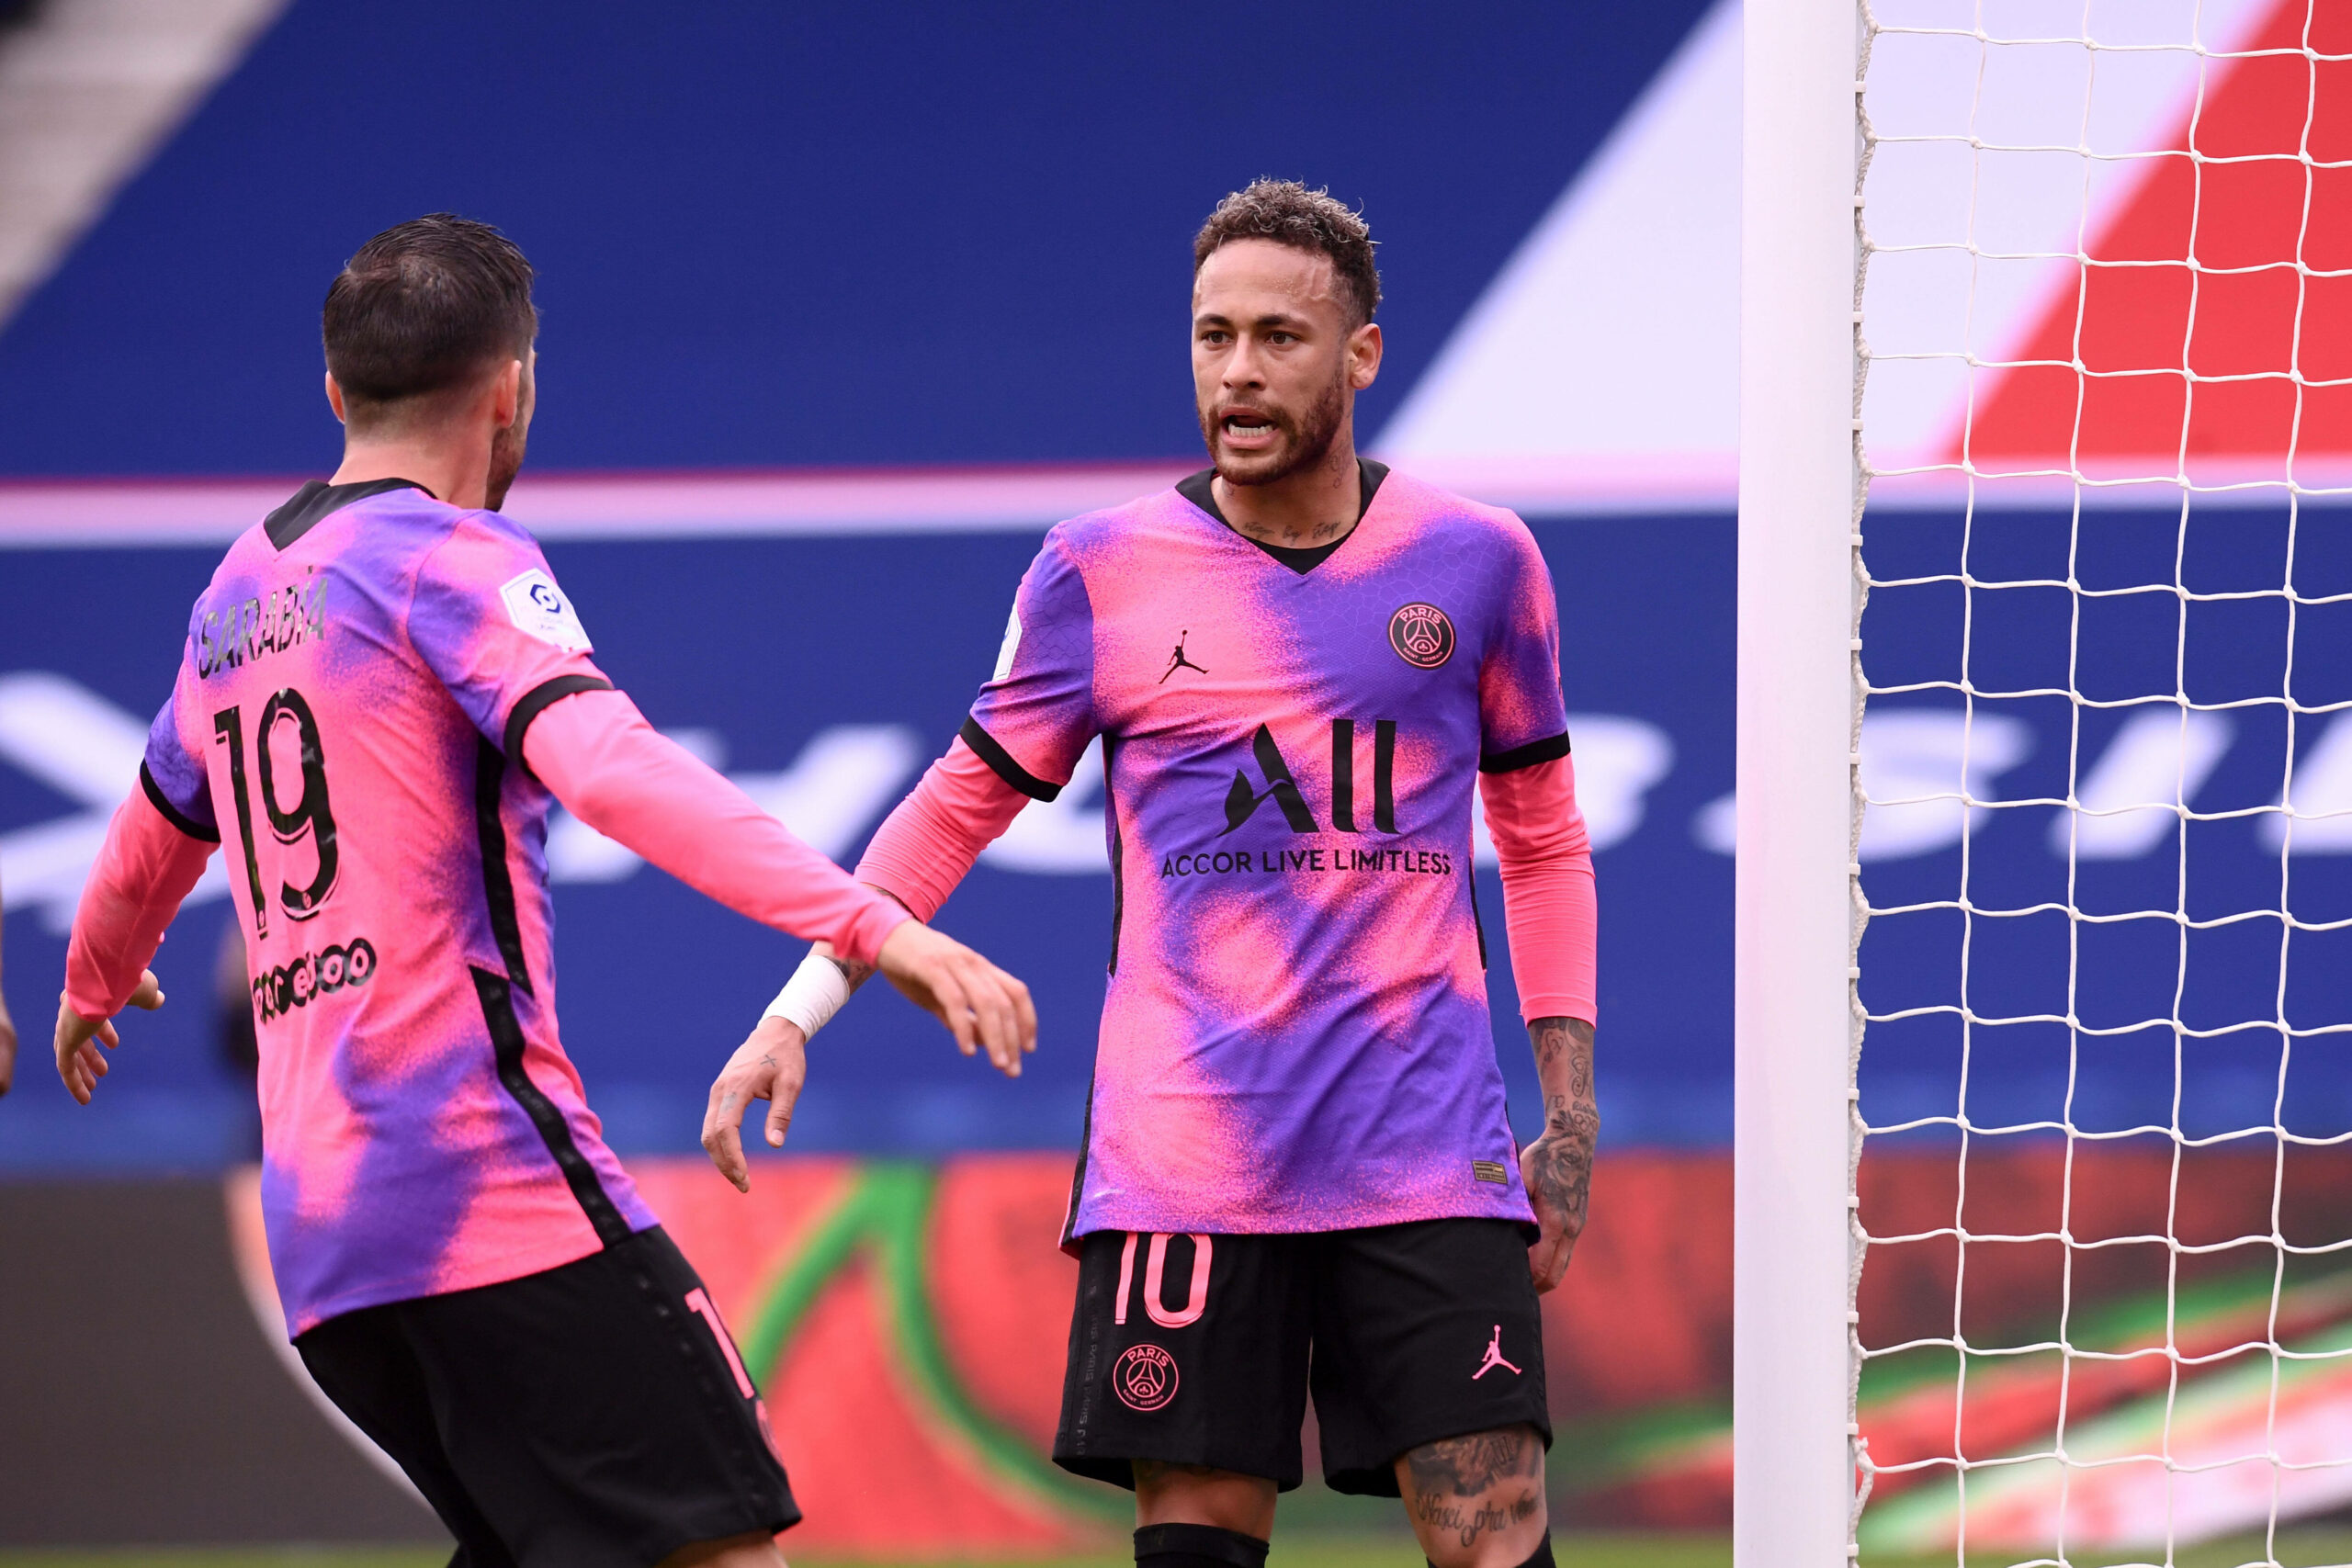 PSG springt an die Spitze: Neymar und Marquinhos besiegeln Sieg gegen Lens!